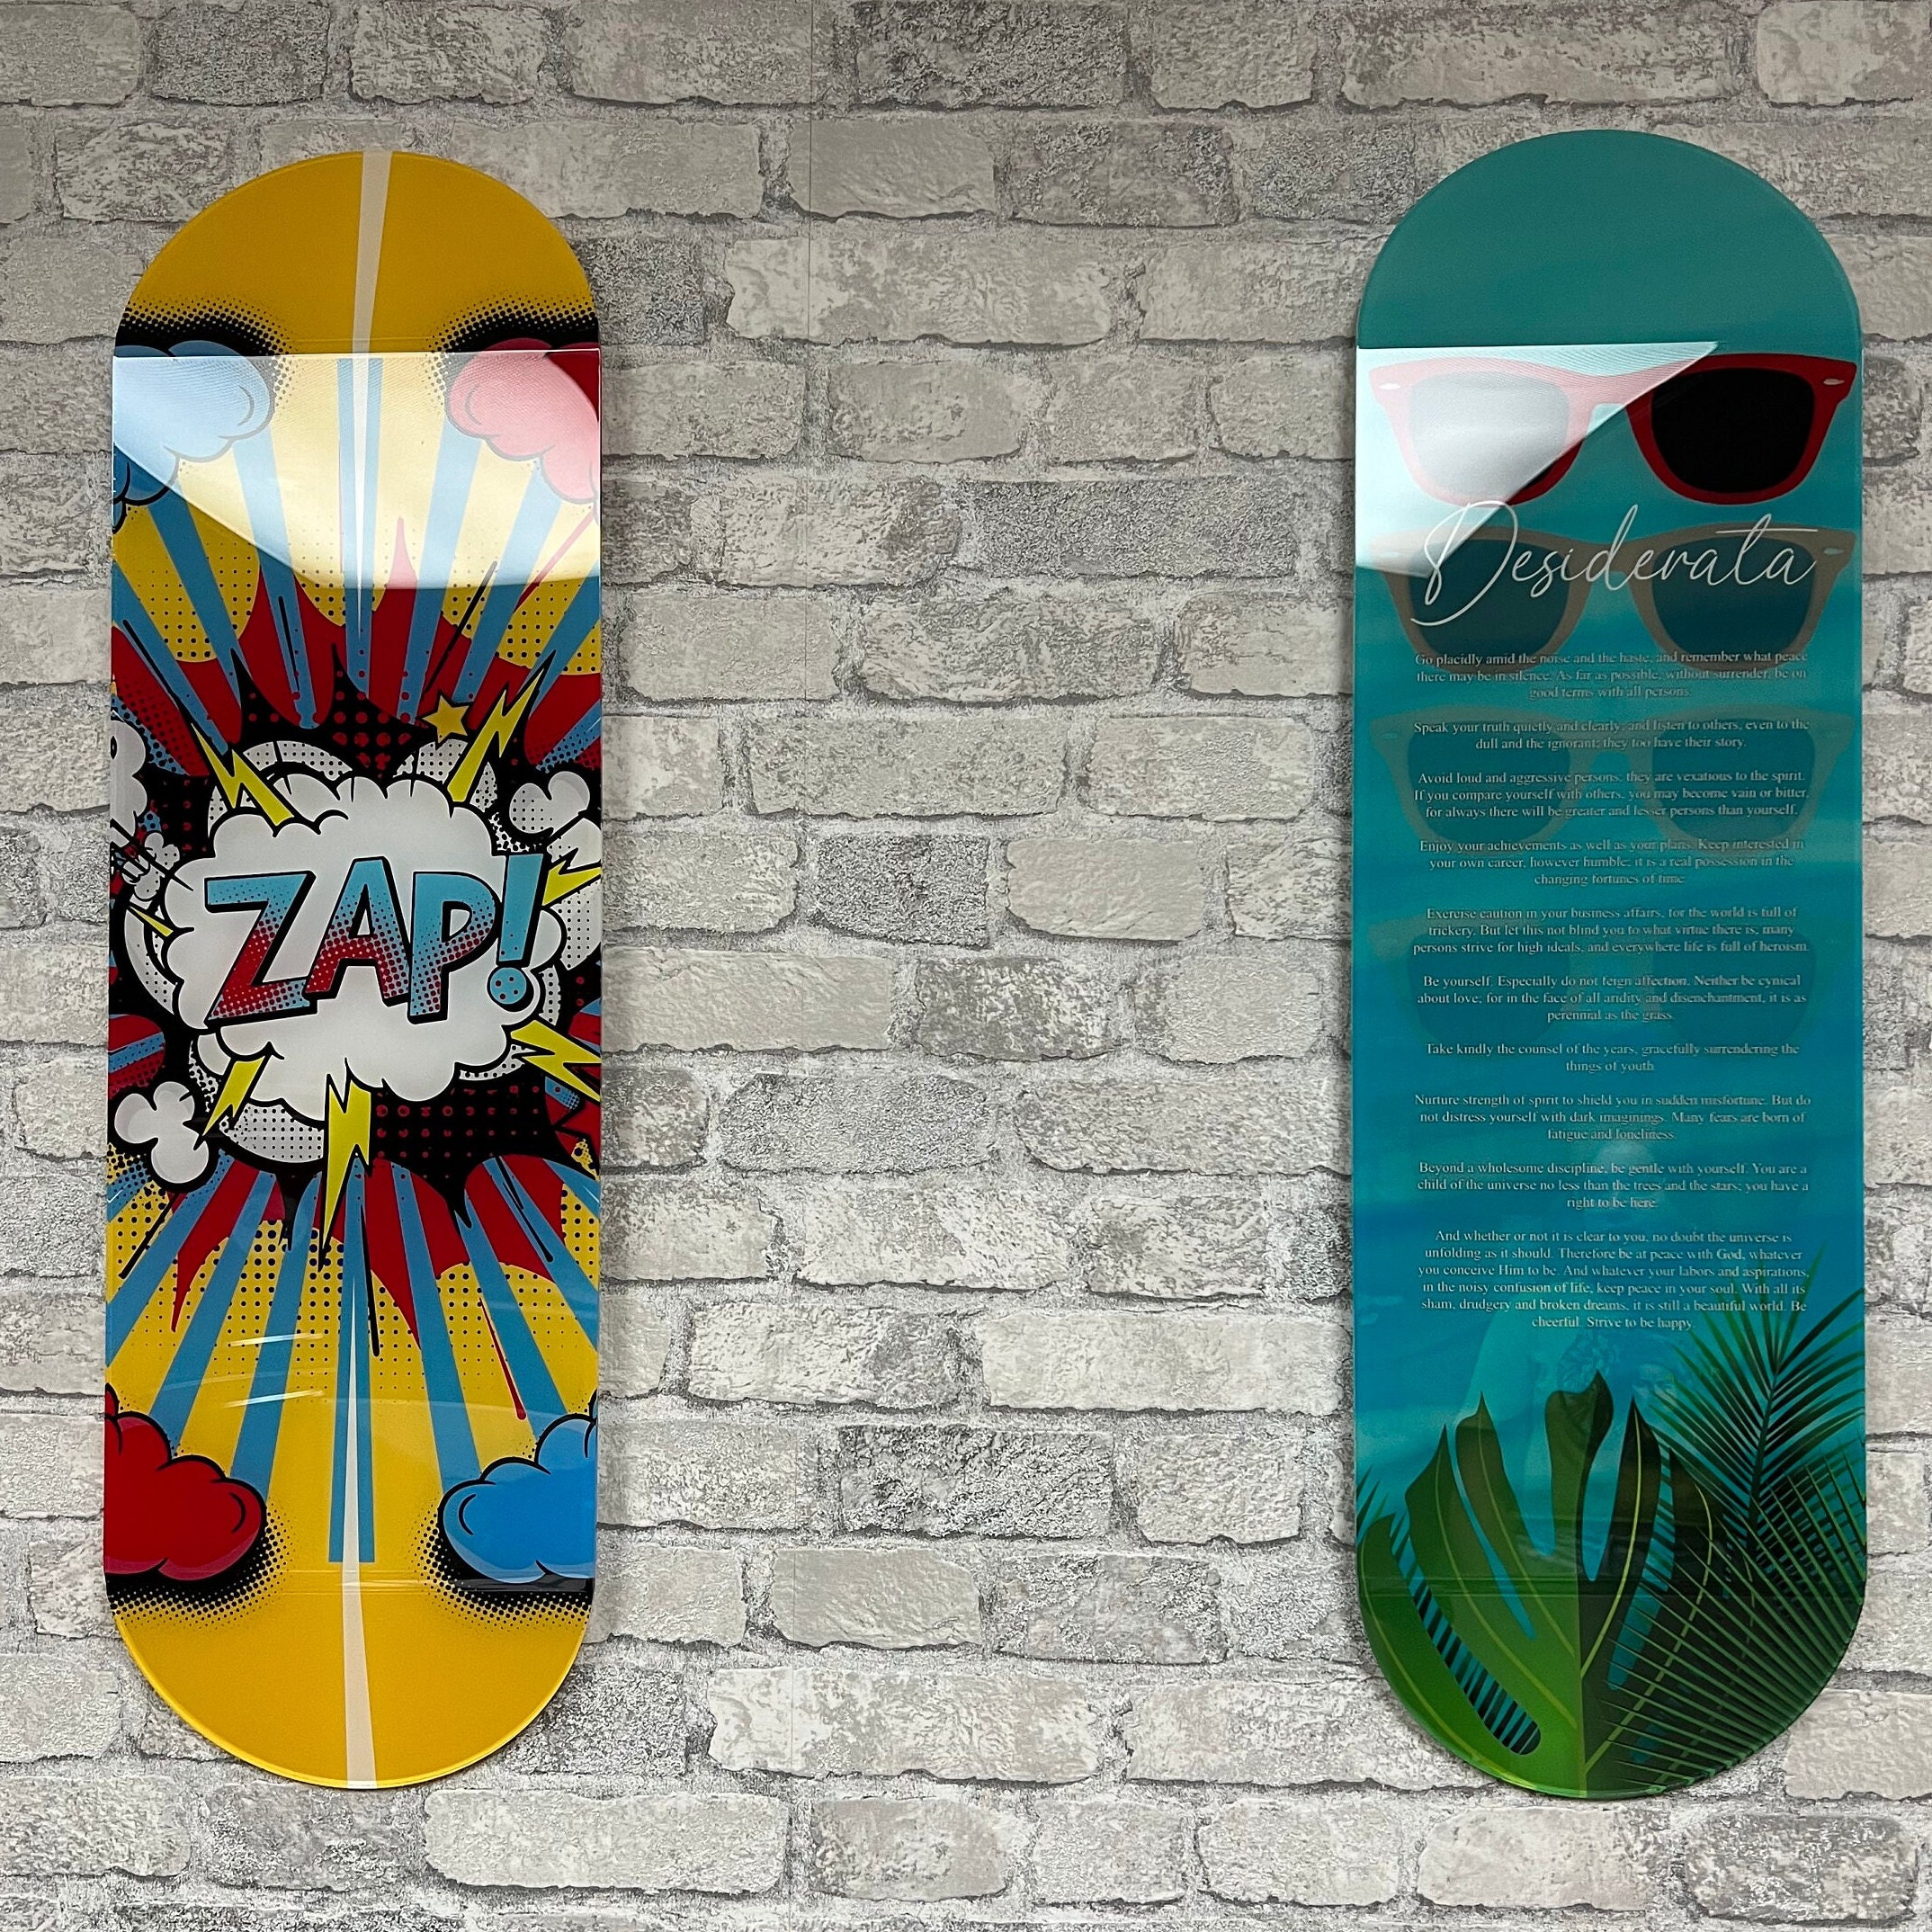 Custom Skateboards as Wall Art - Whatever Skateboards